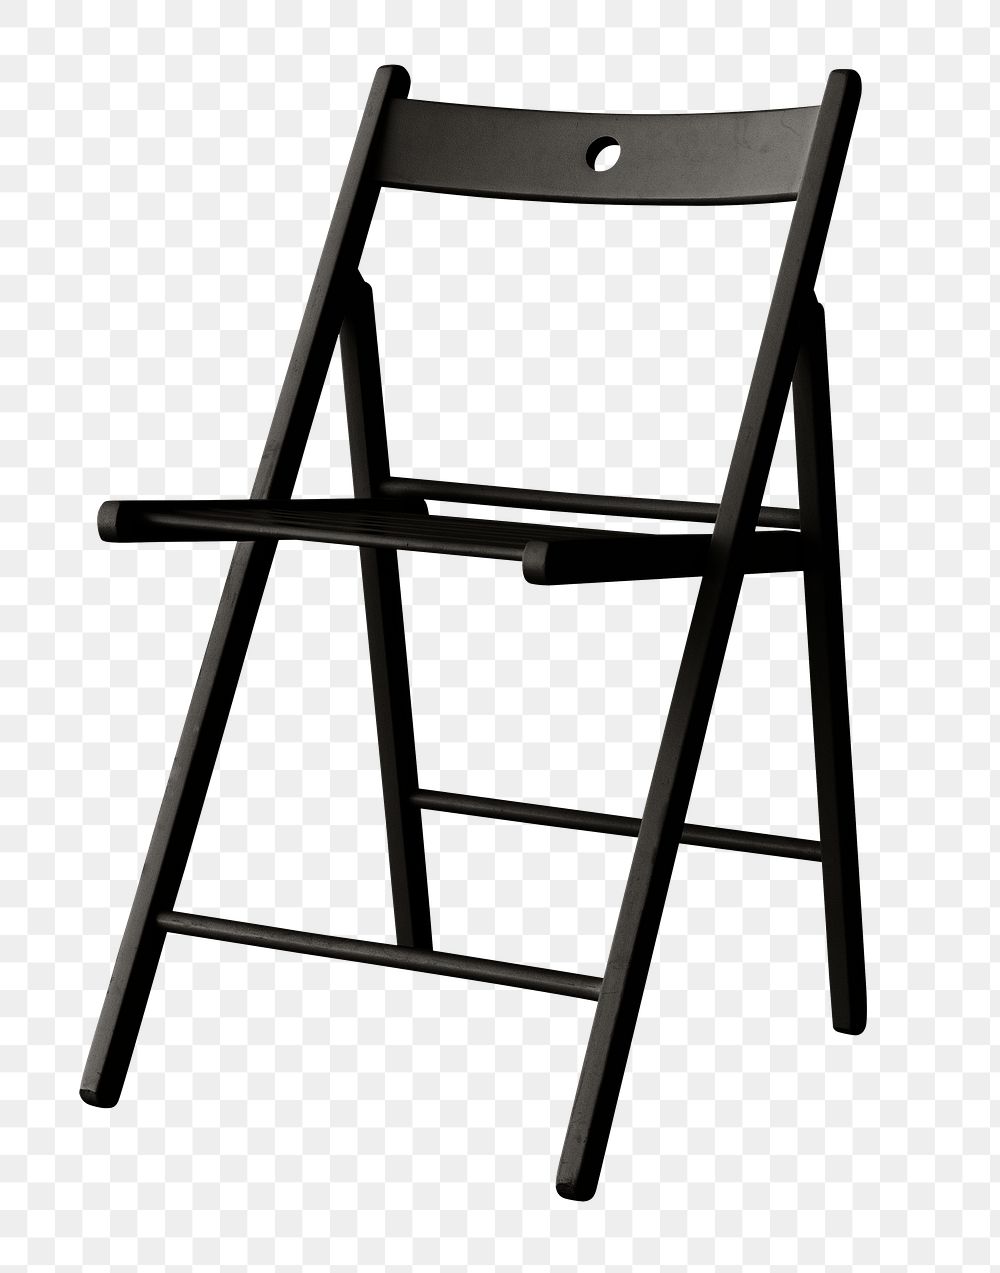 Modern black chair design element